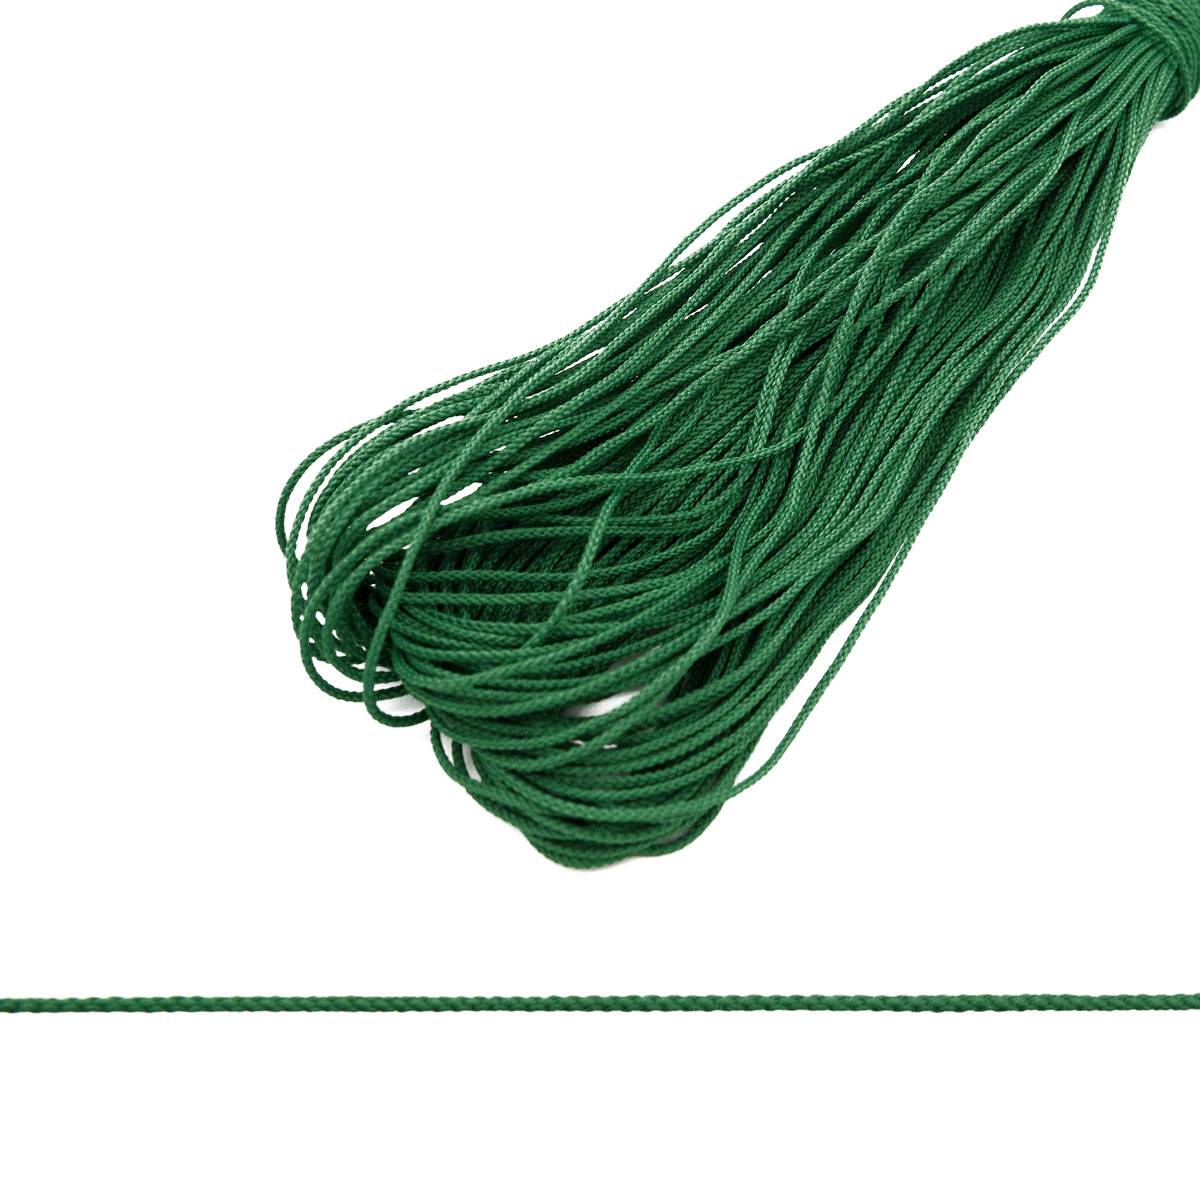 15 лучших плетеных шнуров с алиэкспресс - рейтинг 2021